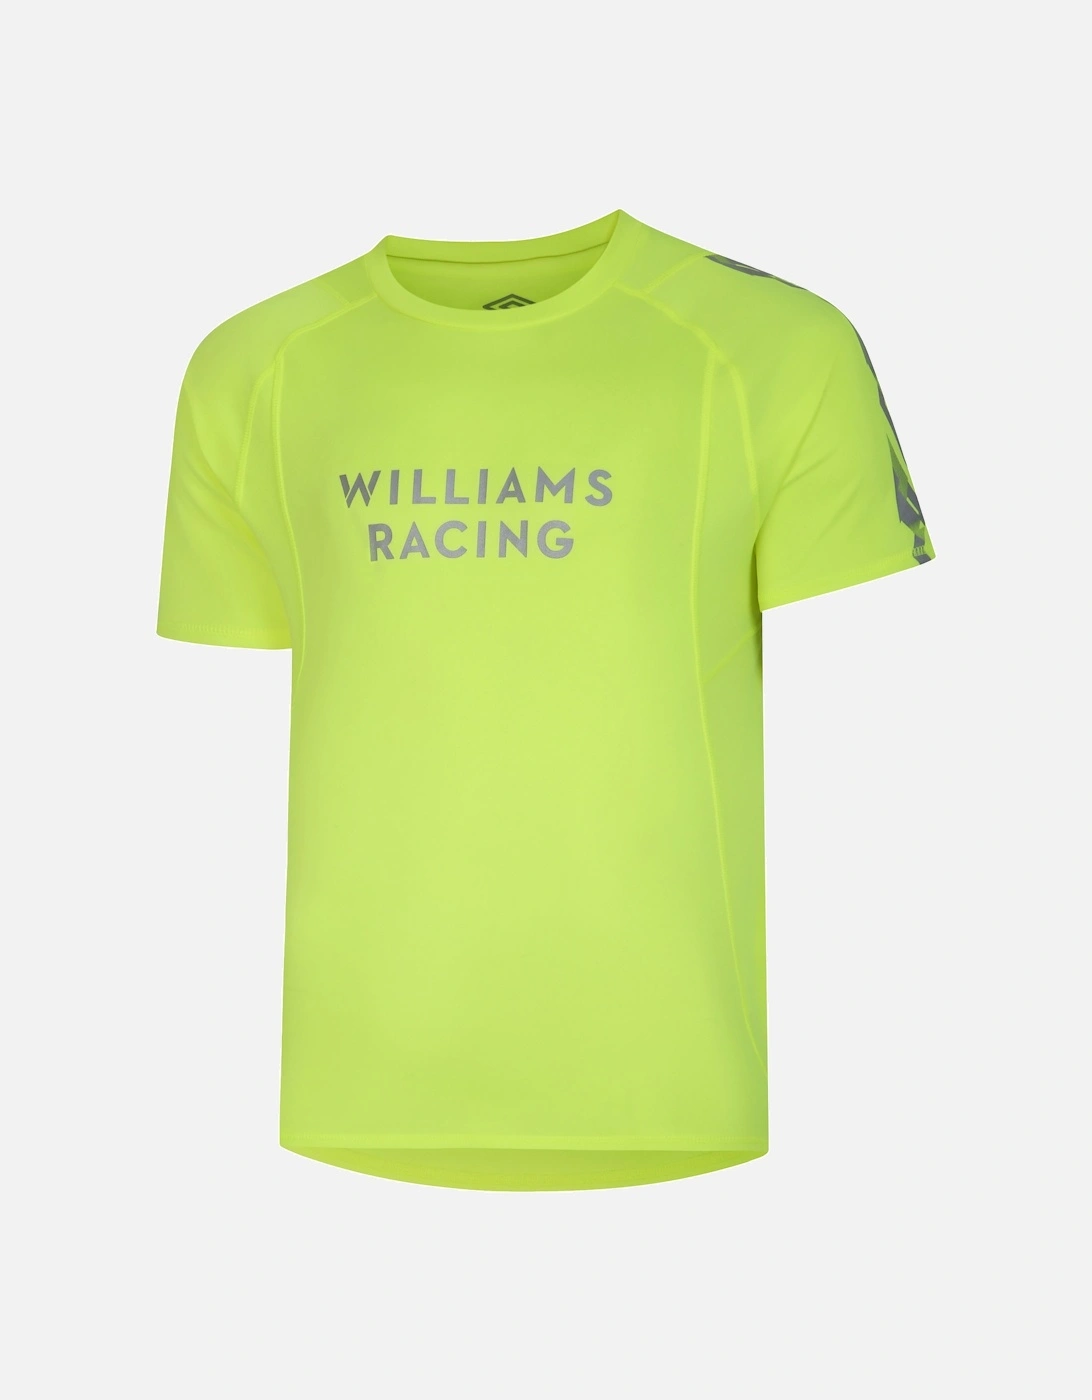 Mens ?'23 Hazard Williams Racing Jersey, 6 of 5